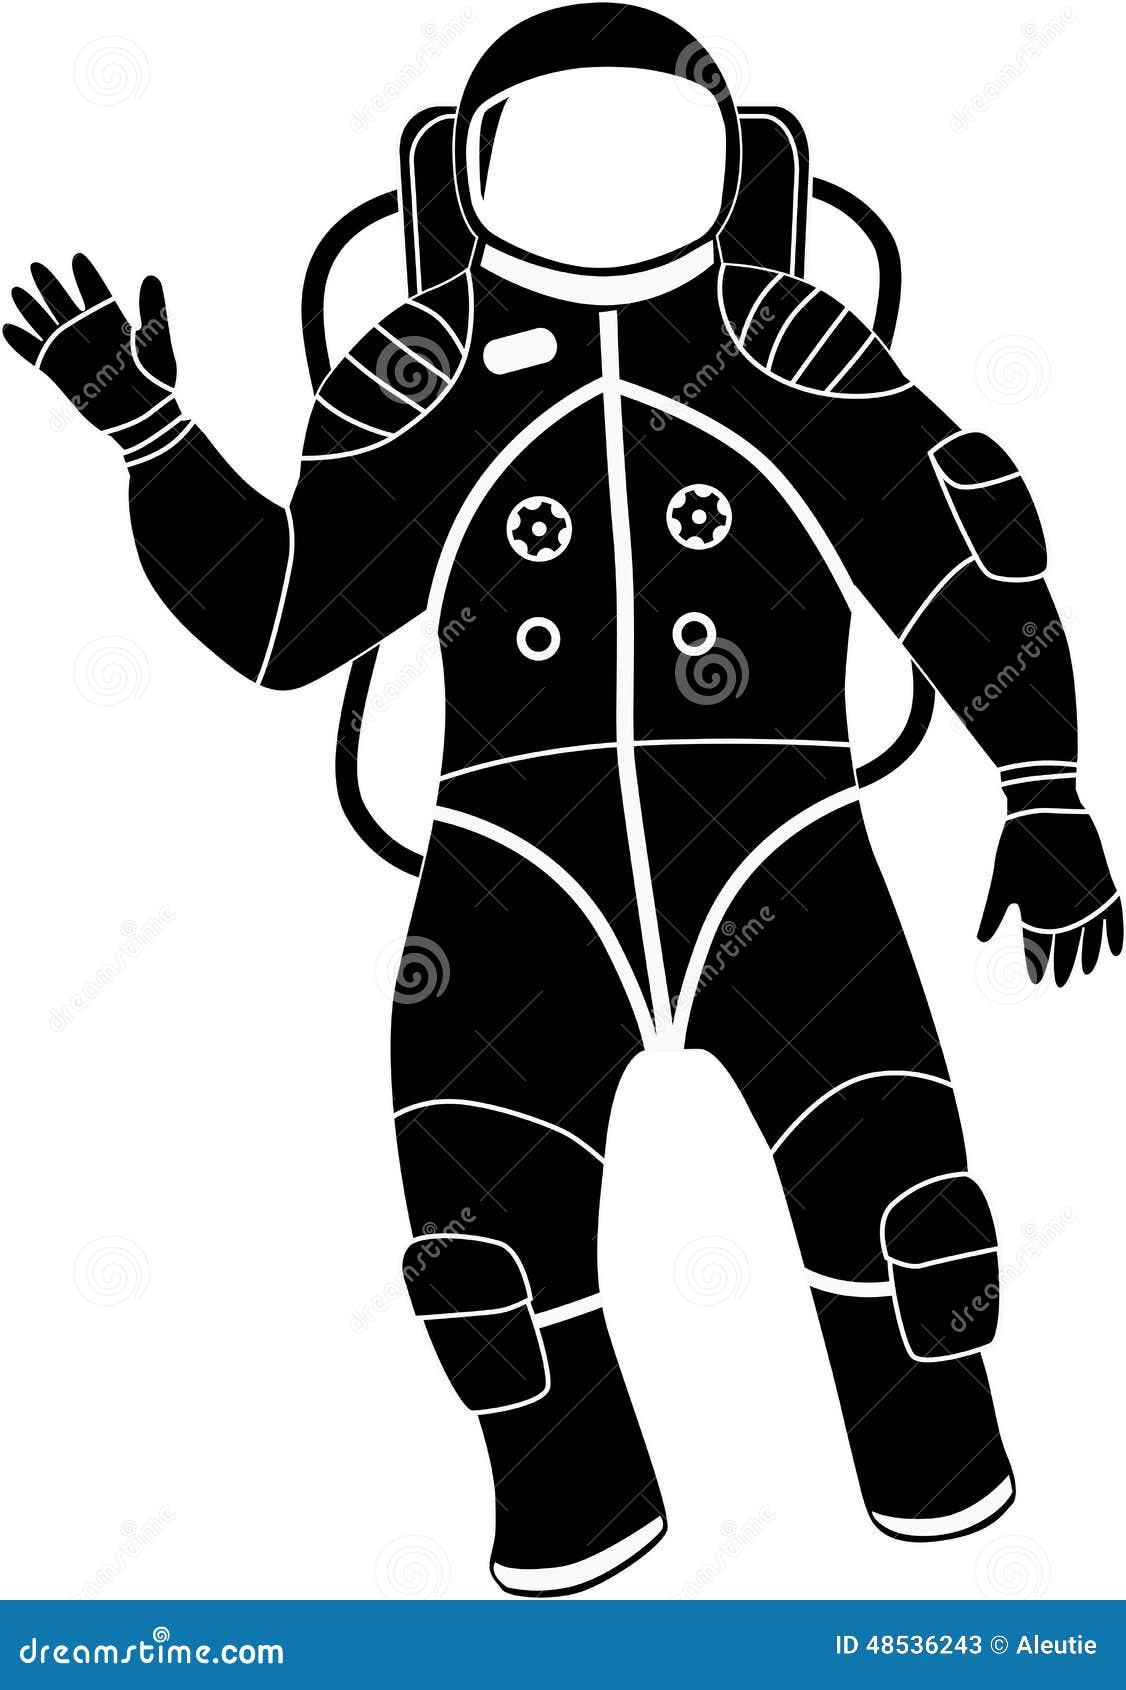 clipart space suit - photo #15